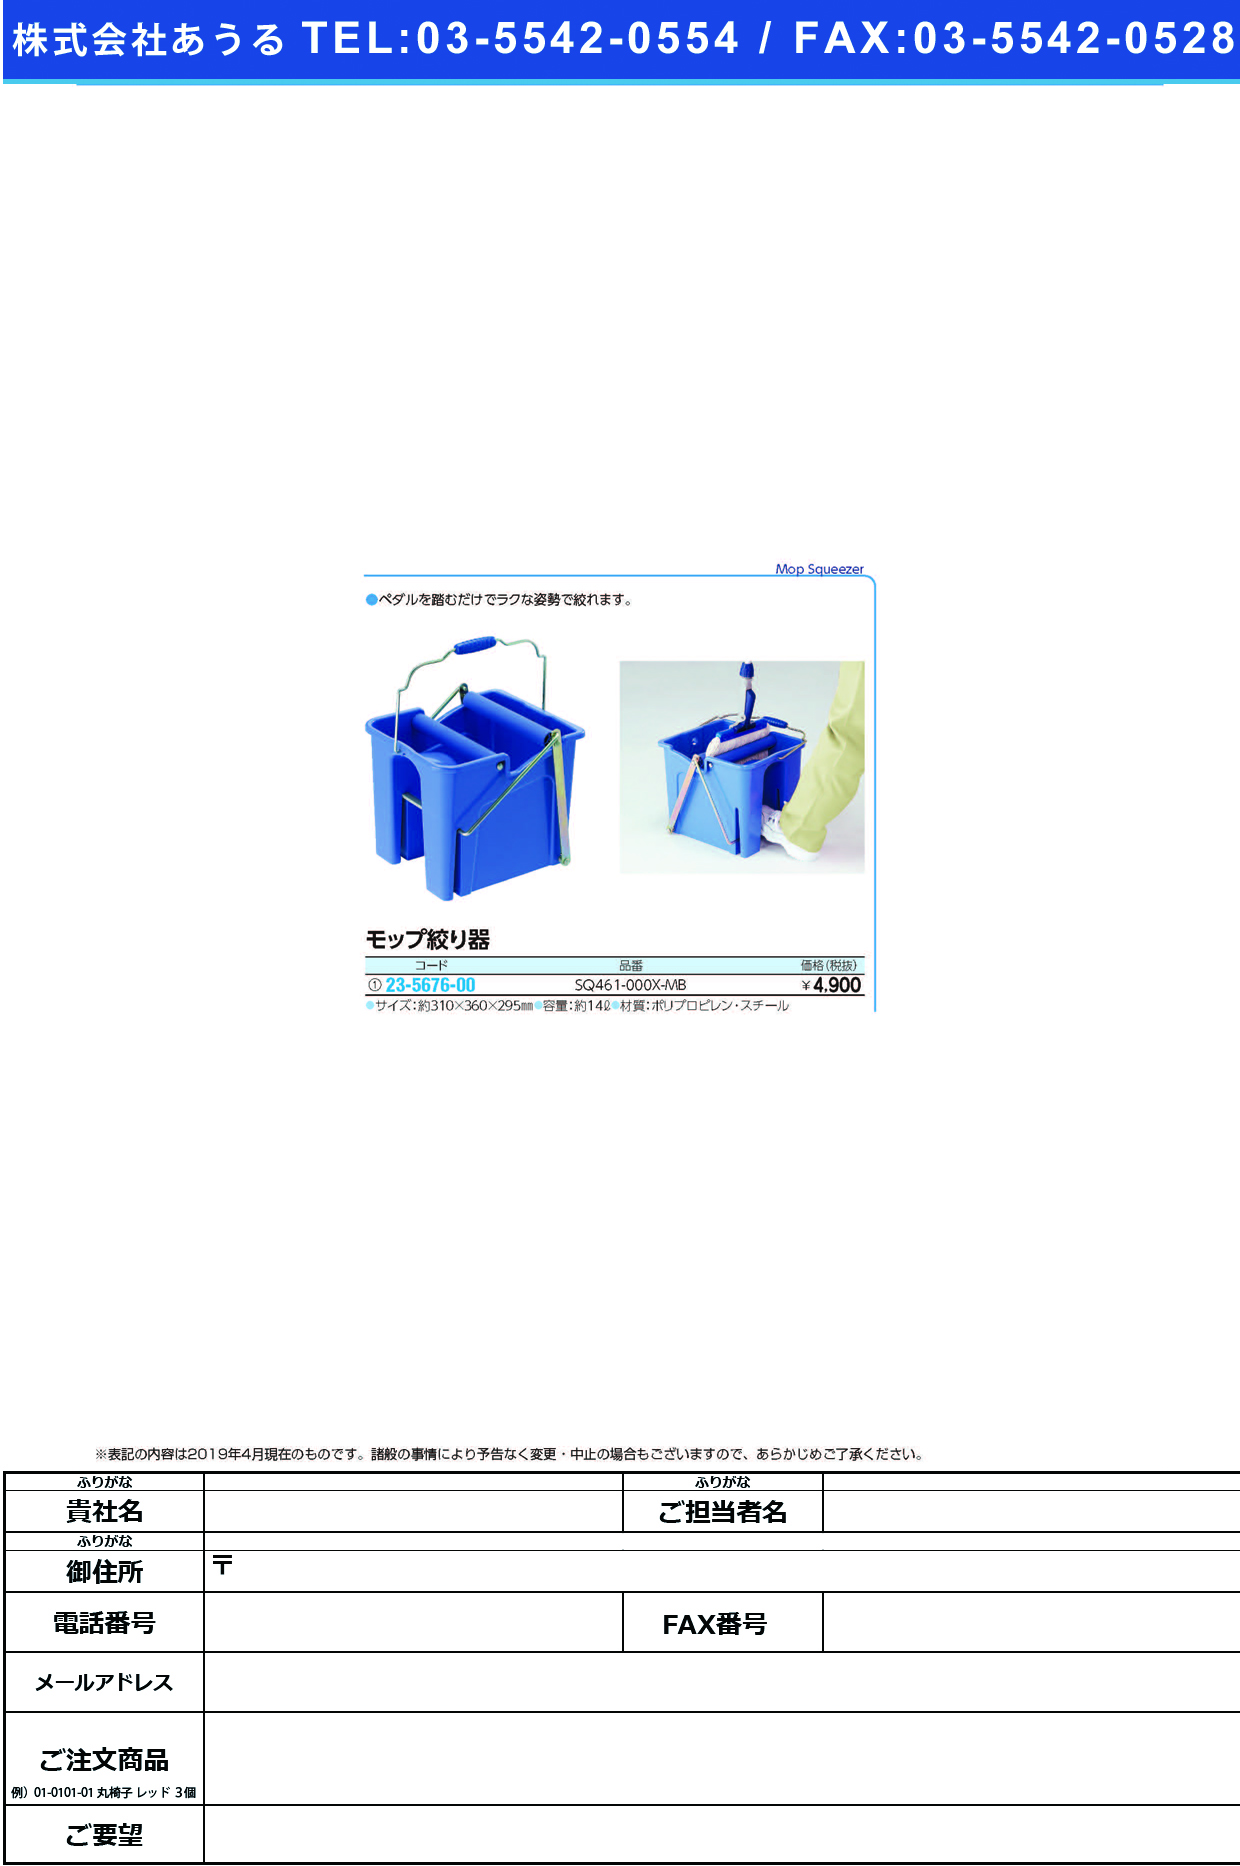 (23-5676-00)モップ絞り器（スクイザーＶ） SQ461-000X-MB ﾓｯﾌﾟｼﾎﾞﾘｷ(ｽｸｲｻﾞｰV)(山崎産業)【1台単位】【2019年カタログ商品】